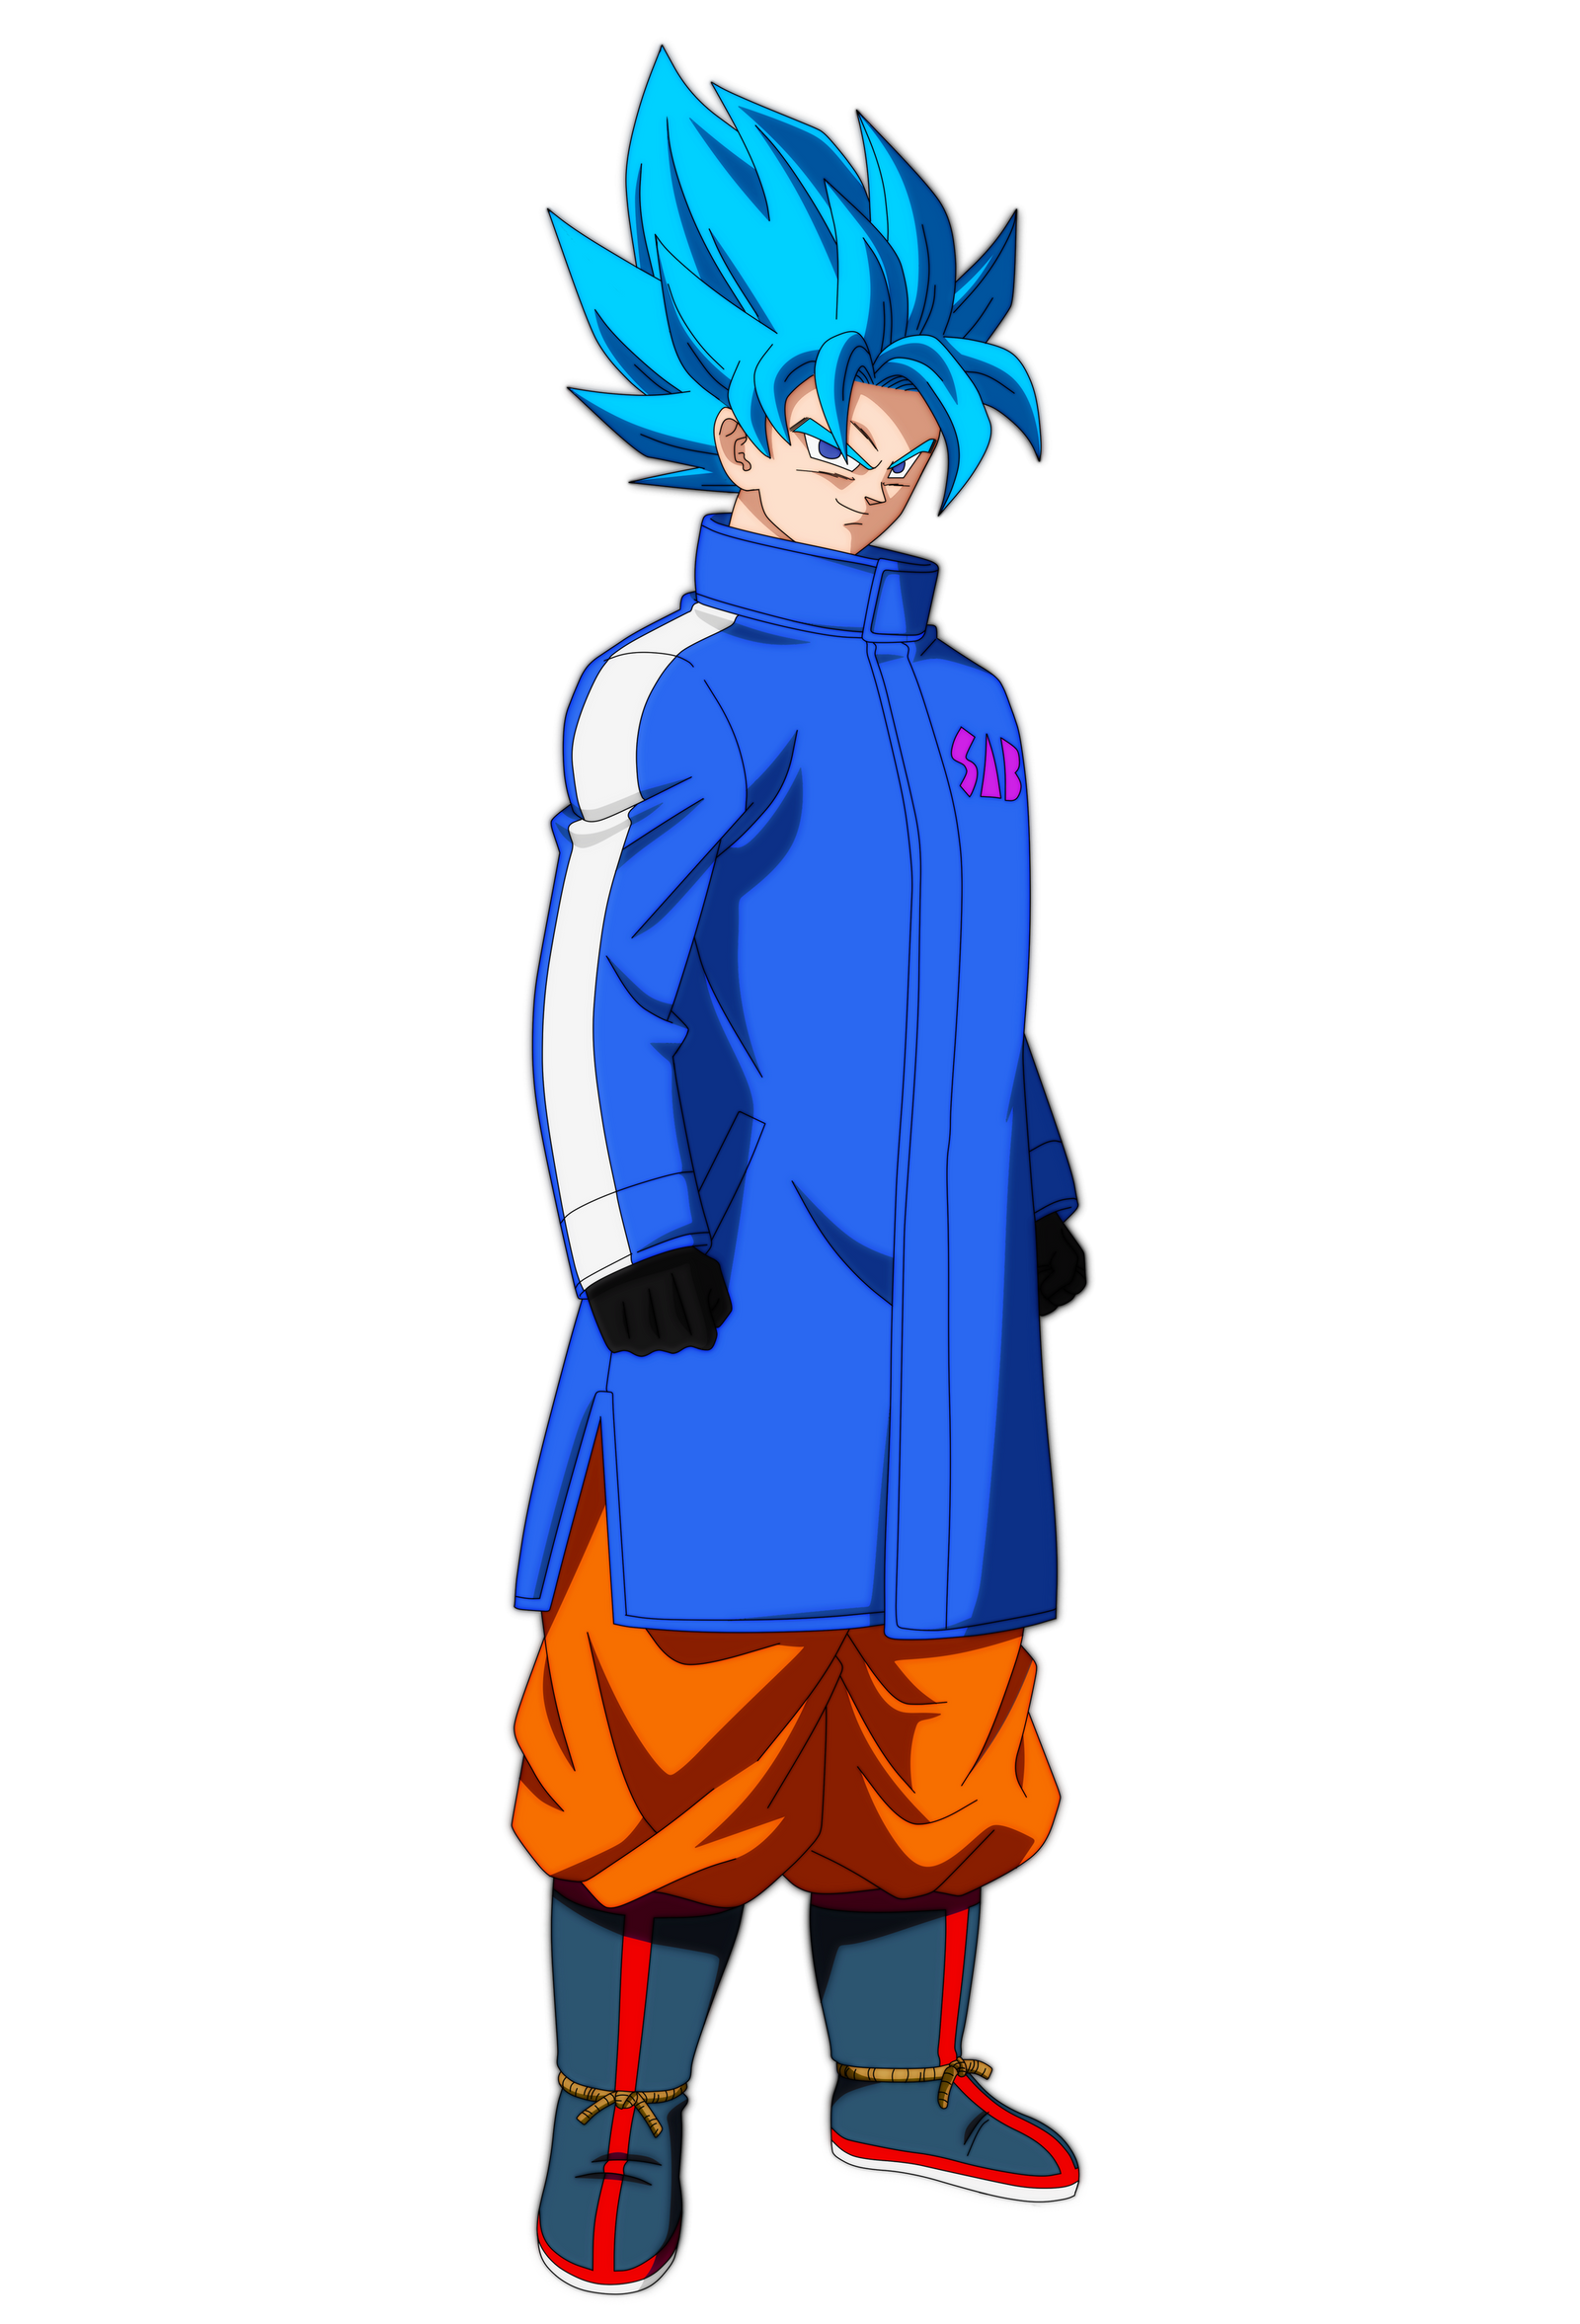 Goku Ssj Blue by andrewdragonball on DeviantArt